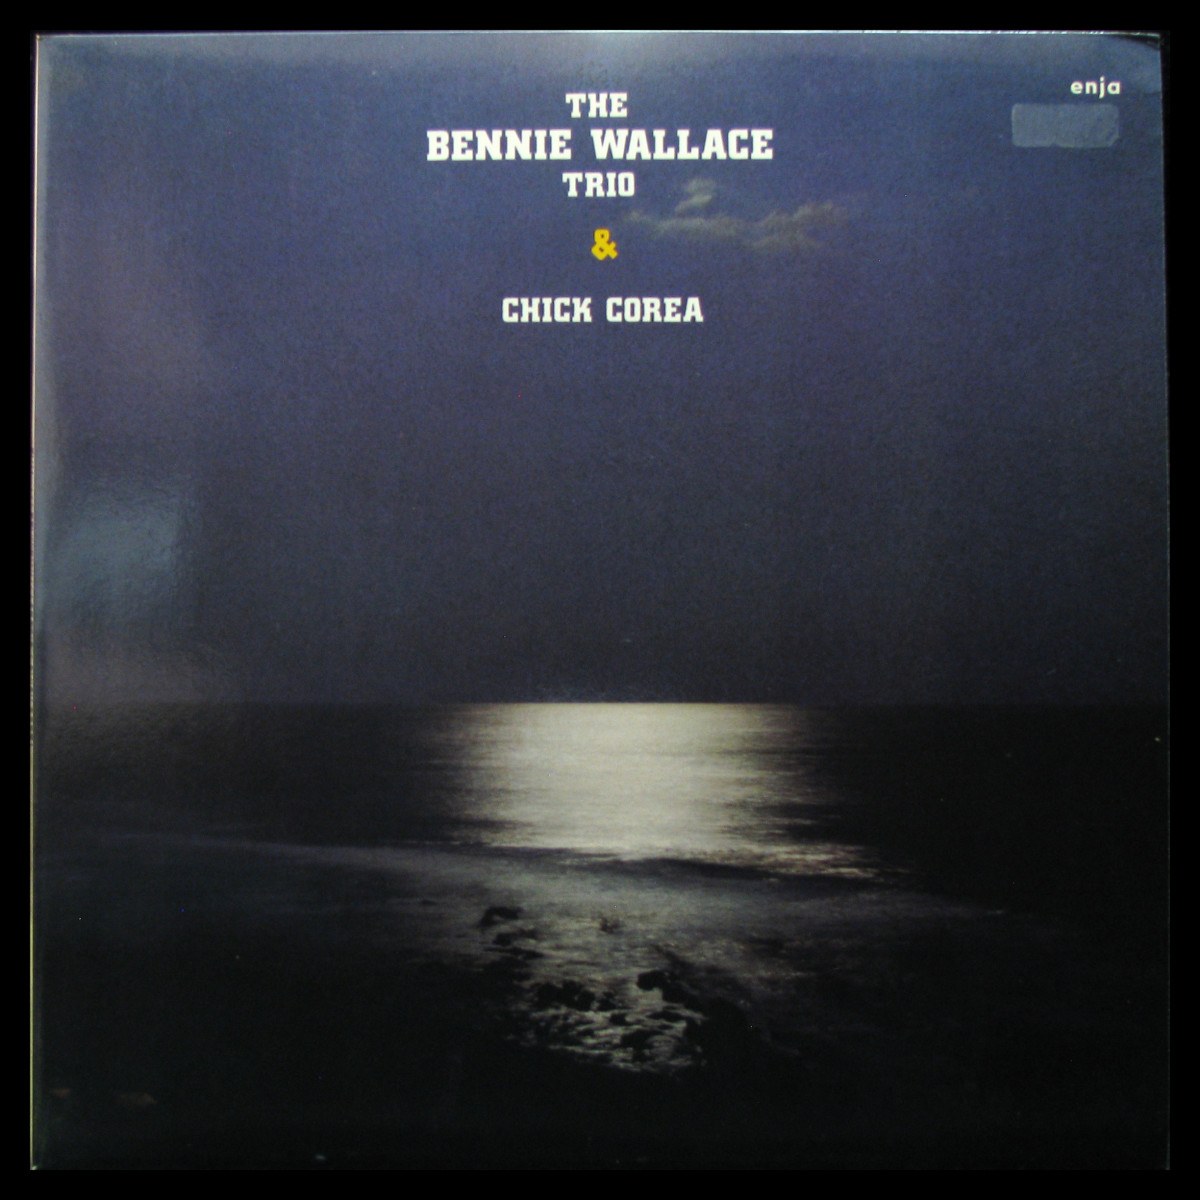 Bennie Wallace Trio & Chick Corea